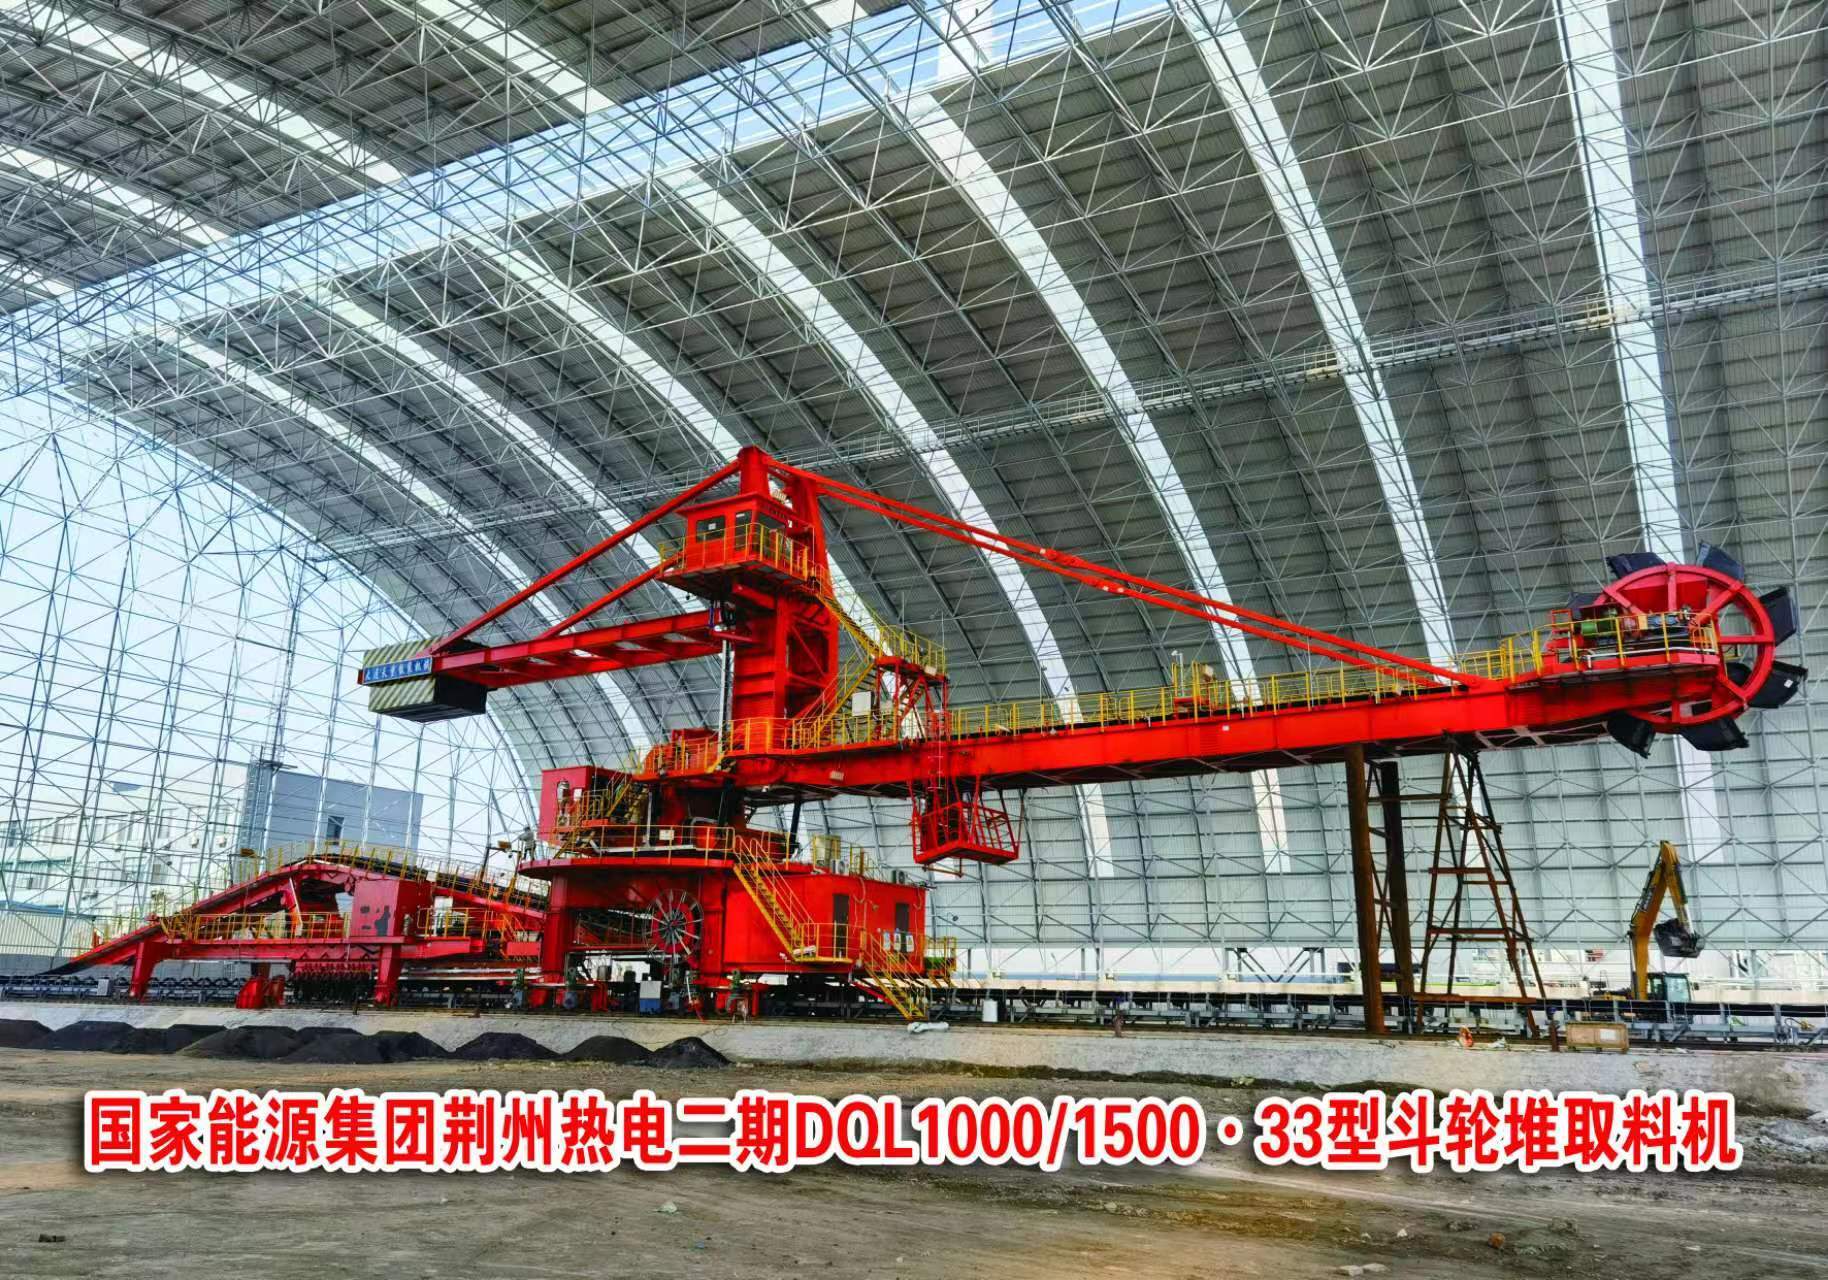 国家能源集团荆州热电二期DQL1000/1500.33型斗轮堆取料机